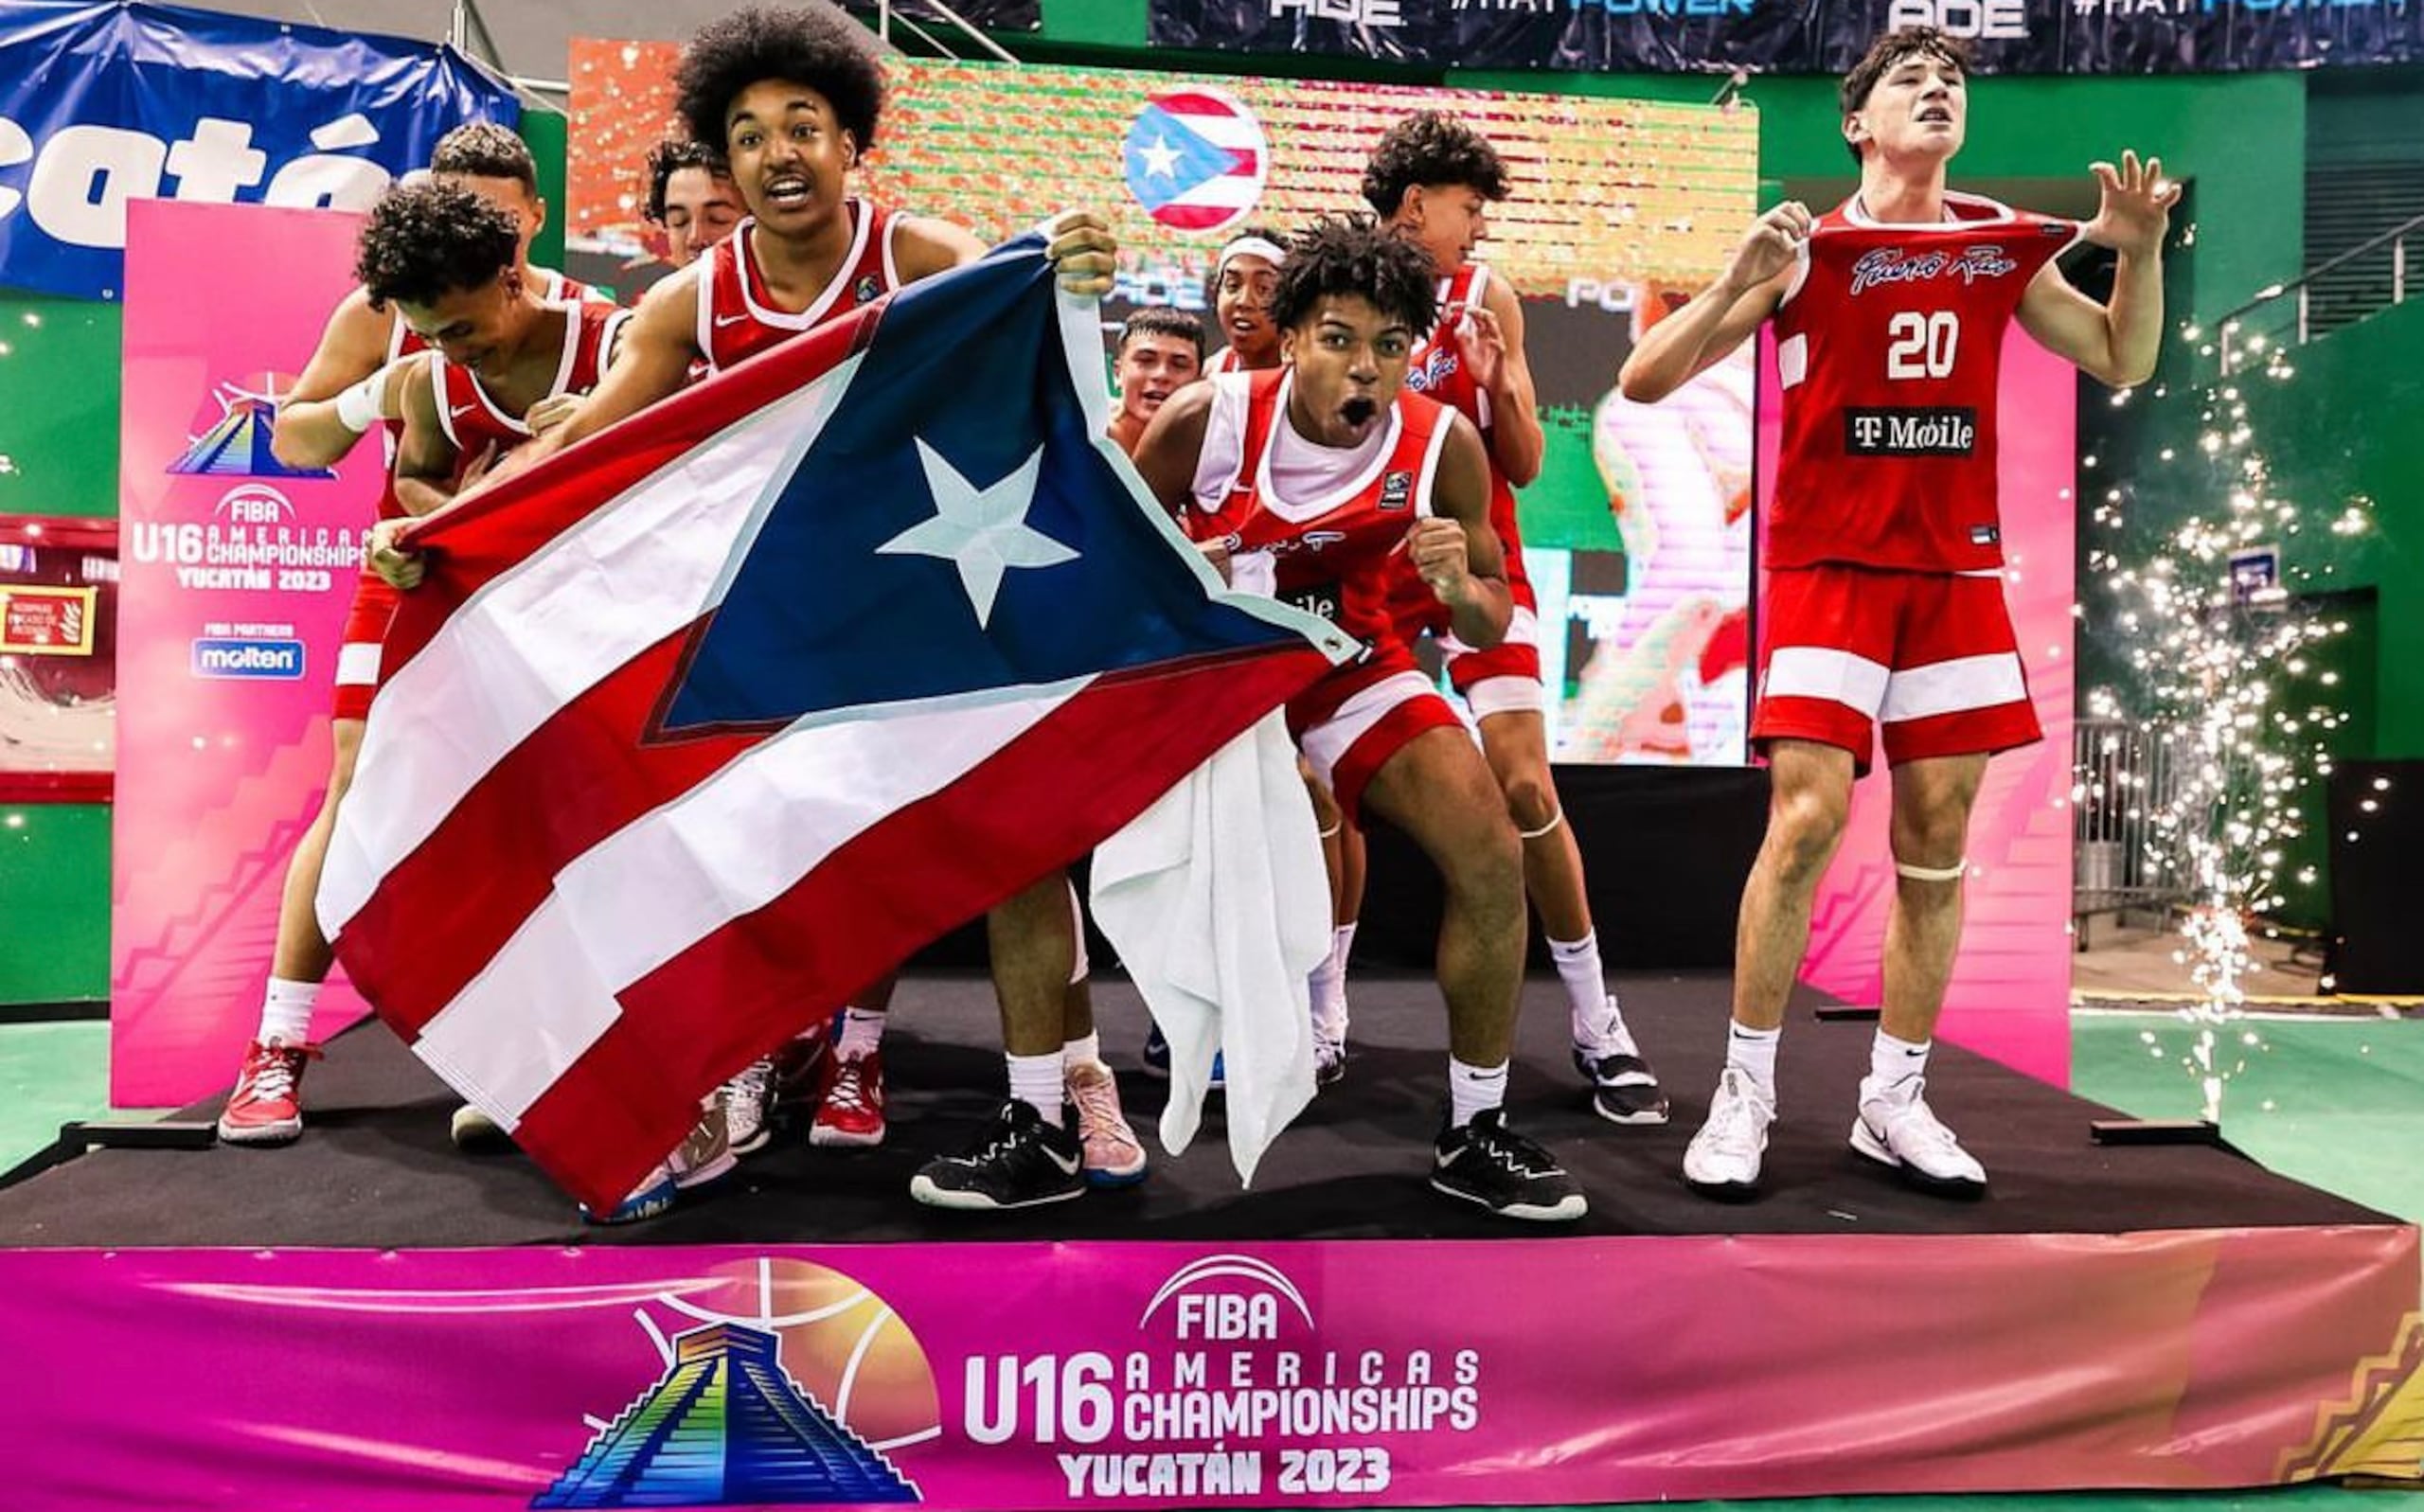 La Selección Nacional Sub16 de Puerto Rico ganó este año el torneo Centrobasket de la categoría, evento que es considerado para el ranking mundial.